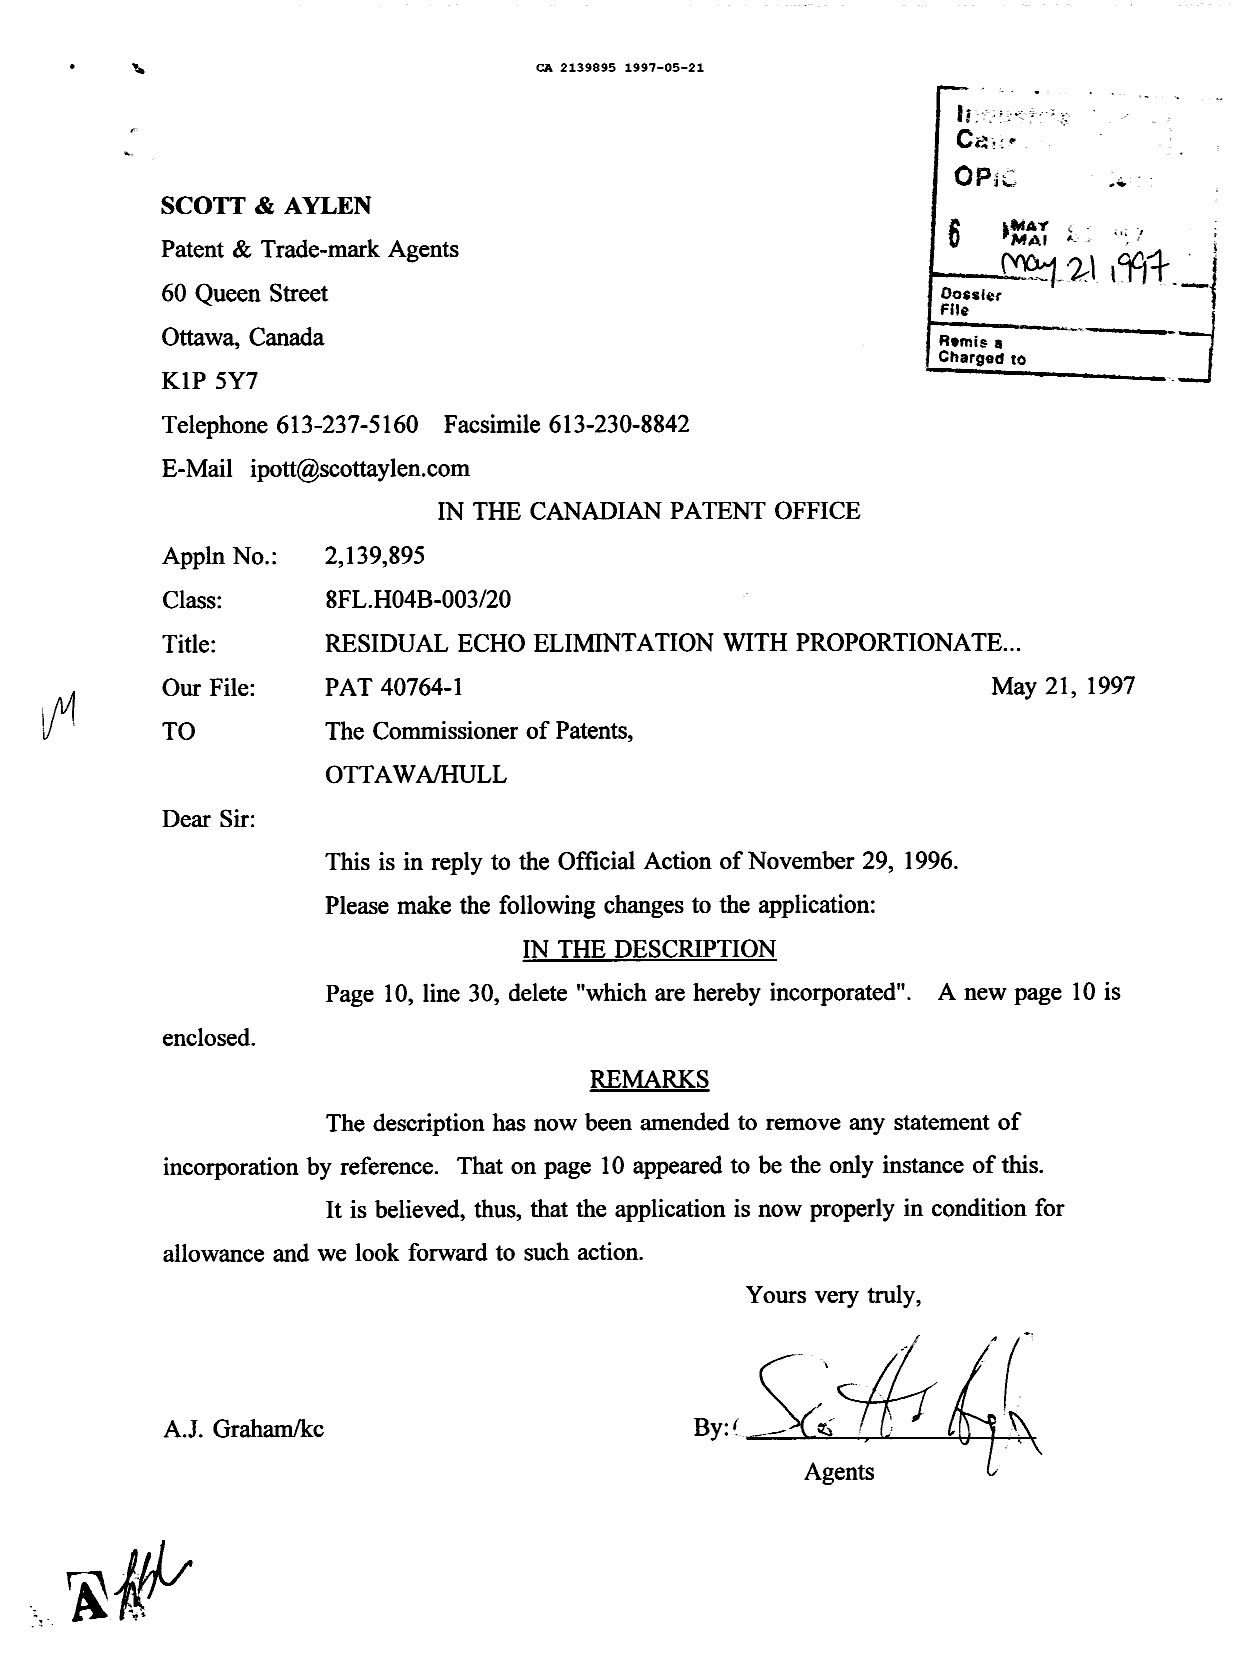 Document de brevet canadien 2139895. Correspondance de la poursuite 19970521. Image 1 de 1